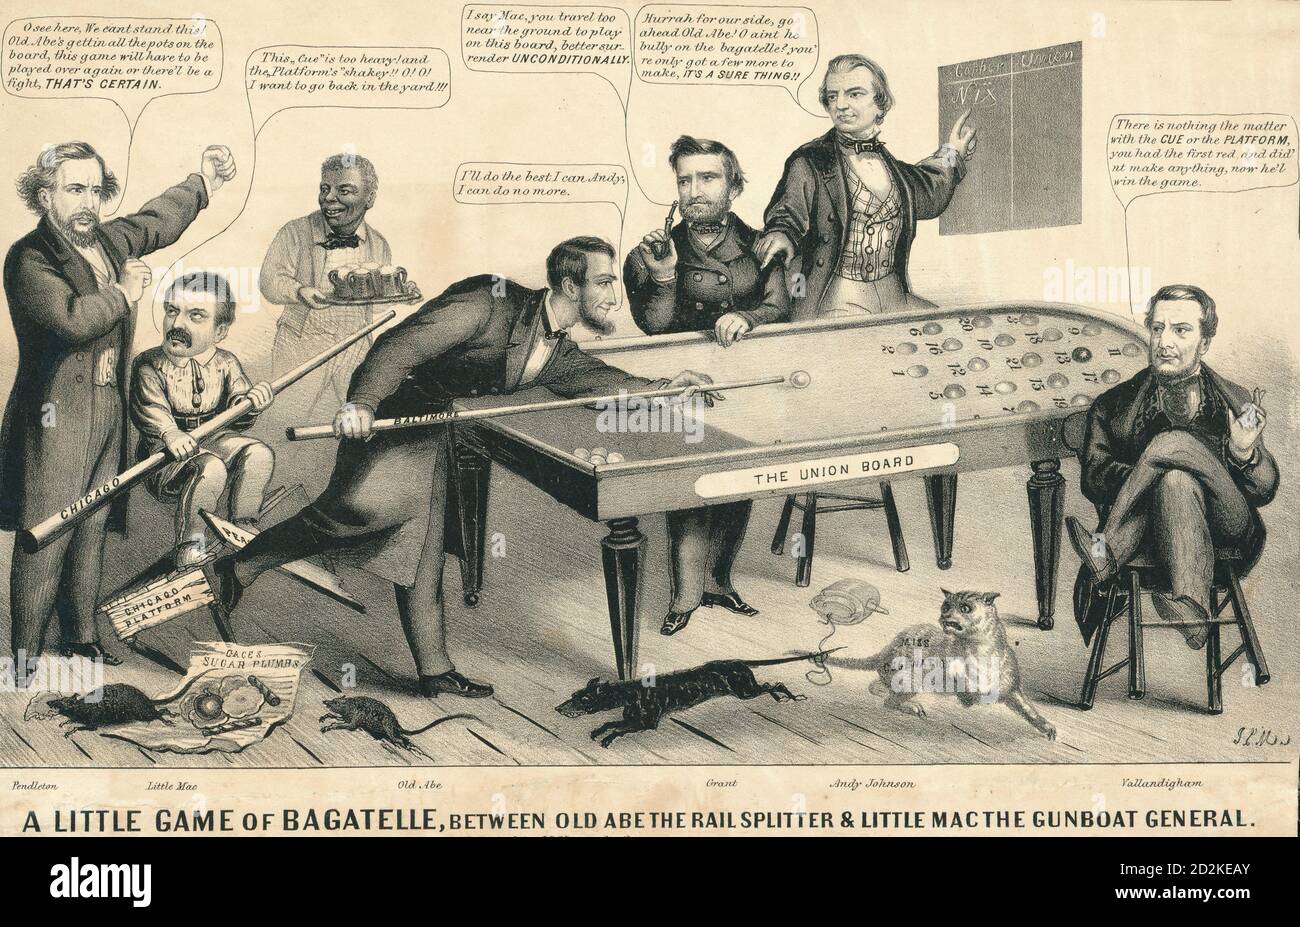 Un piccolo gioco di bagatelle, tra Old Abe la ferrovia splitter & Little Mac il generale cannoniere. Un cartoon politico durante la guerra civile americana, 1864 Foto Stock